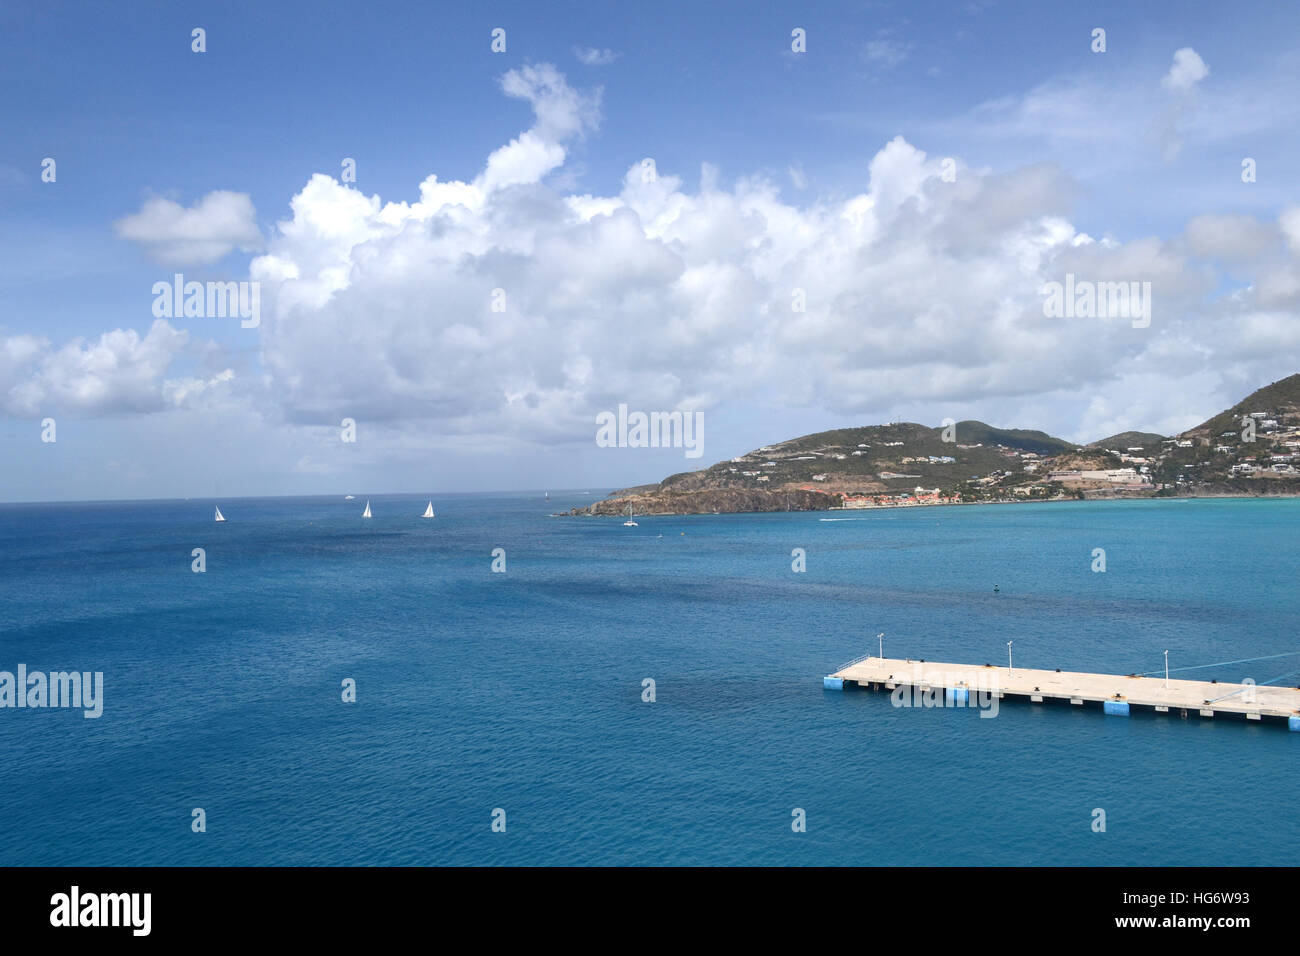 Harbor and dock in Saint Maarten. Stock Photo